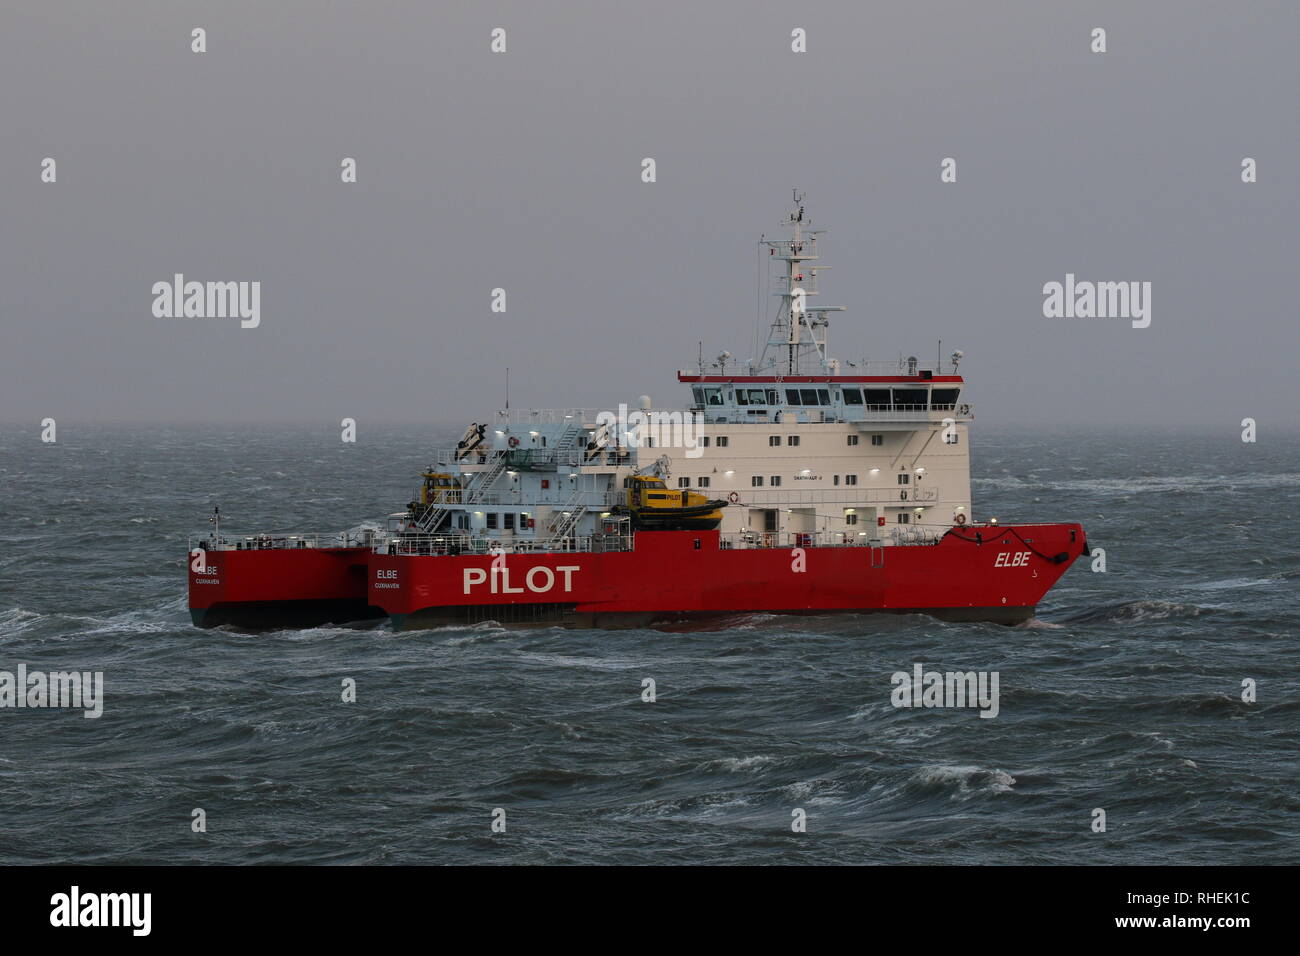 Le bateau-pilote pilote Elbe attend en face du port de Cuxhaven le 1er janvier 2019 pour les navires. Banque D'Images